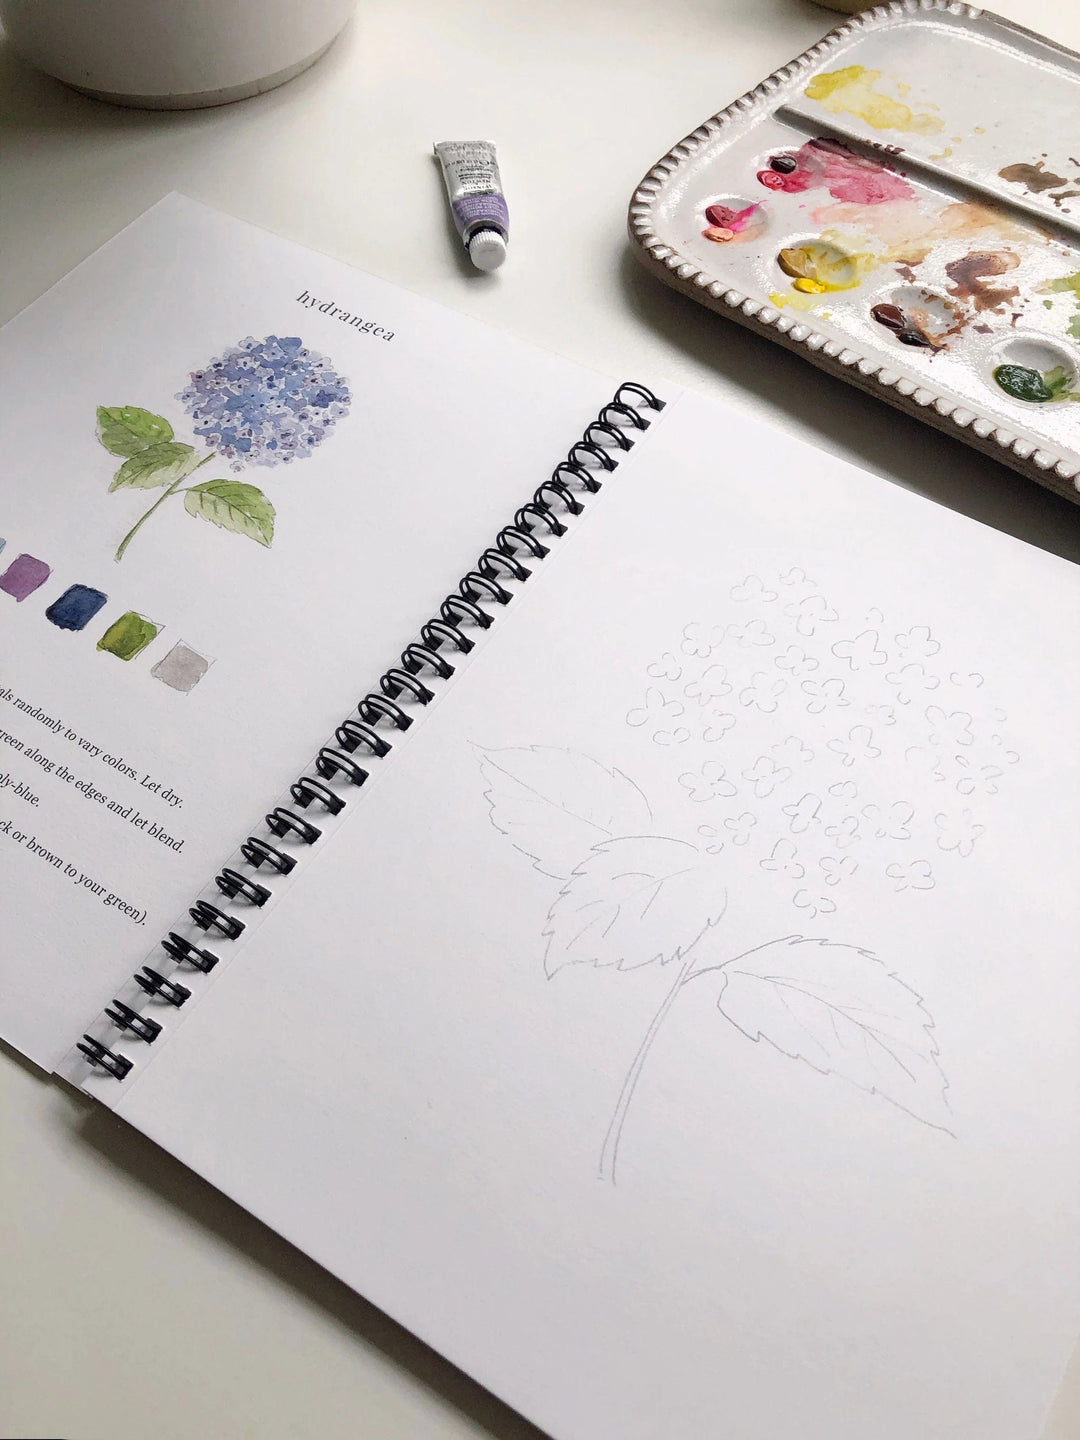 Watercolor Workbook: Flowers